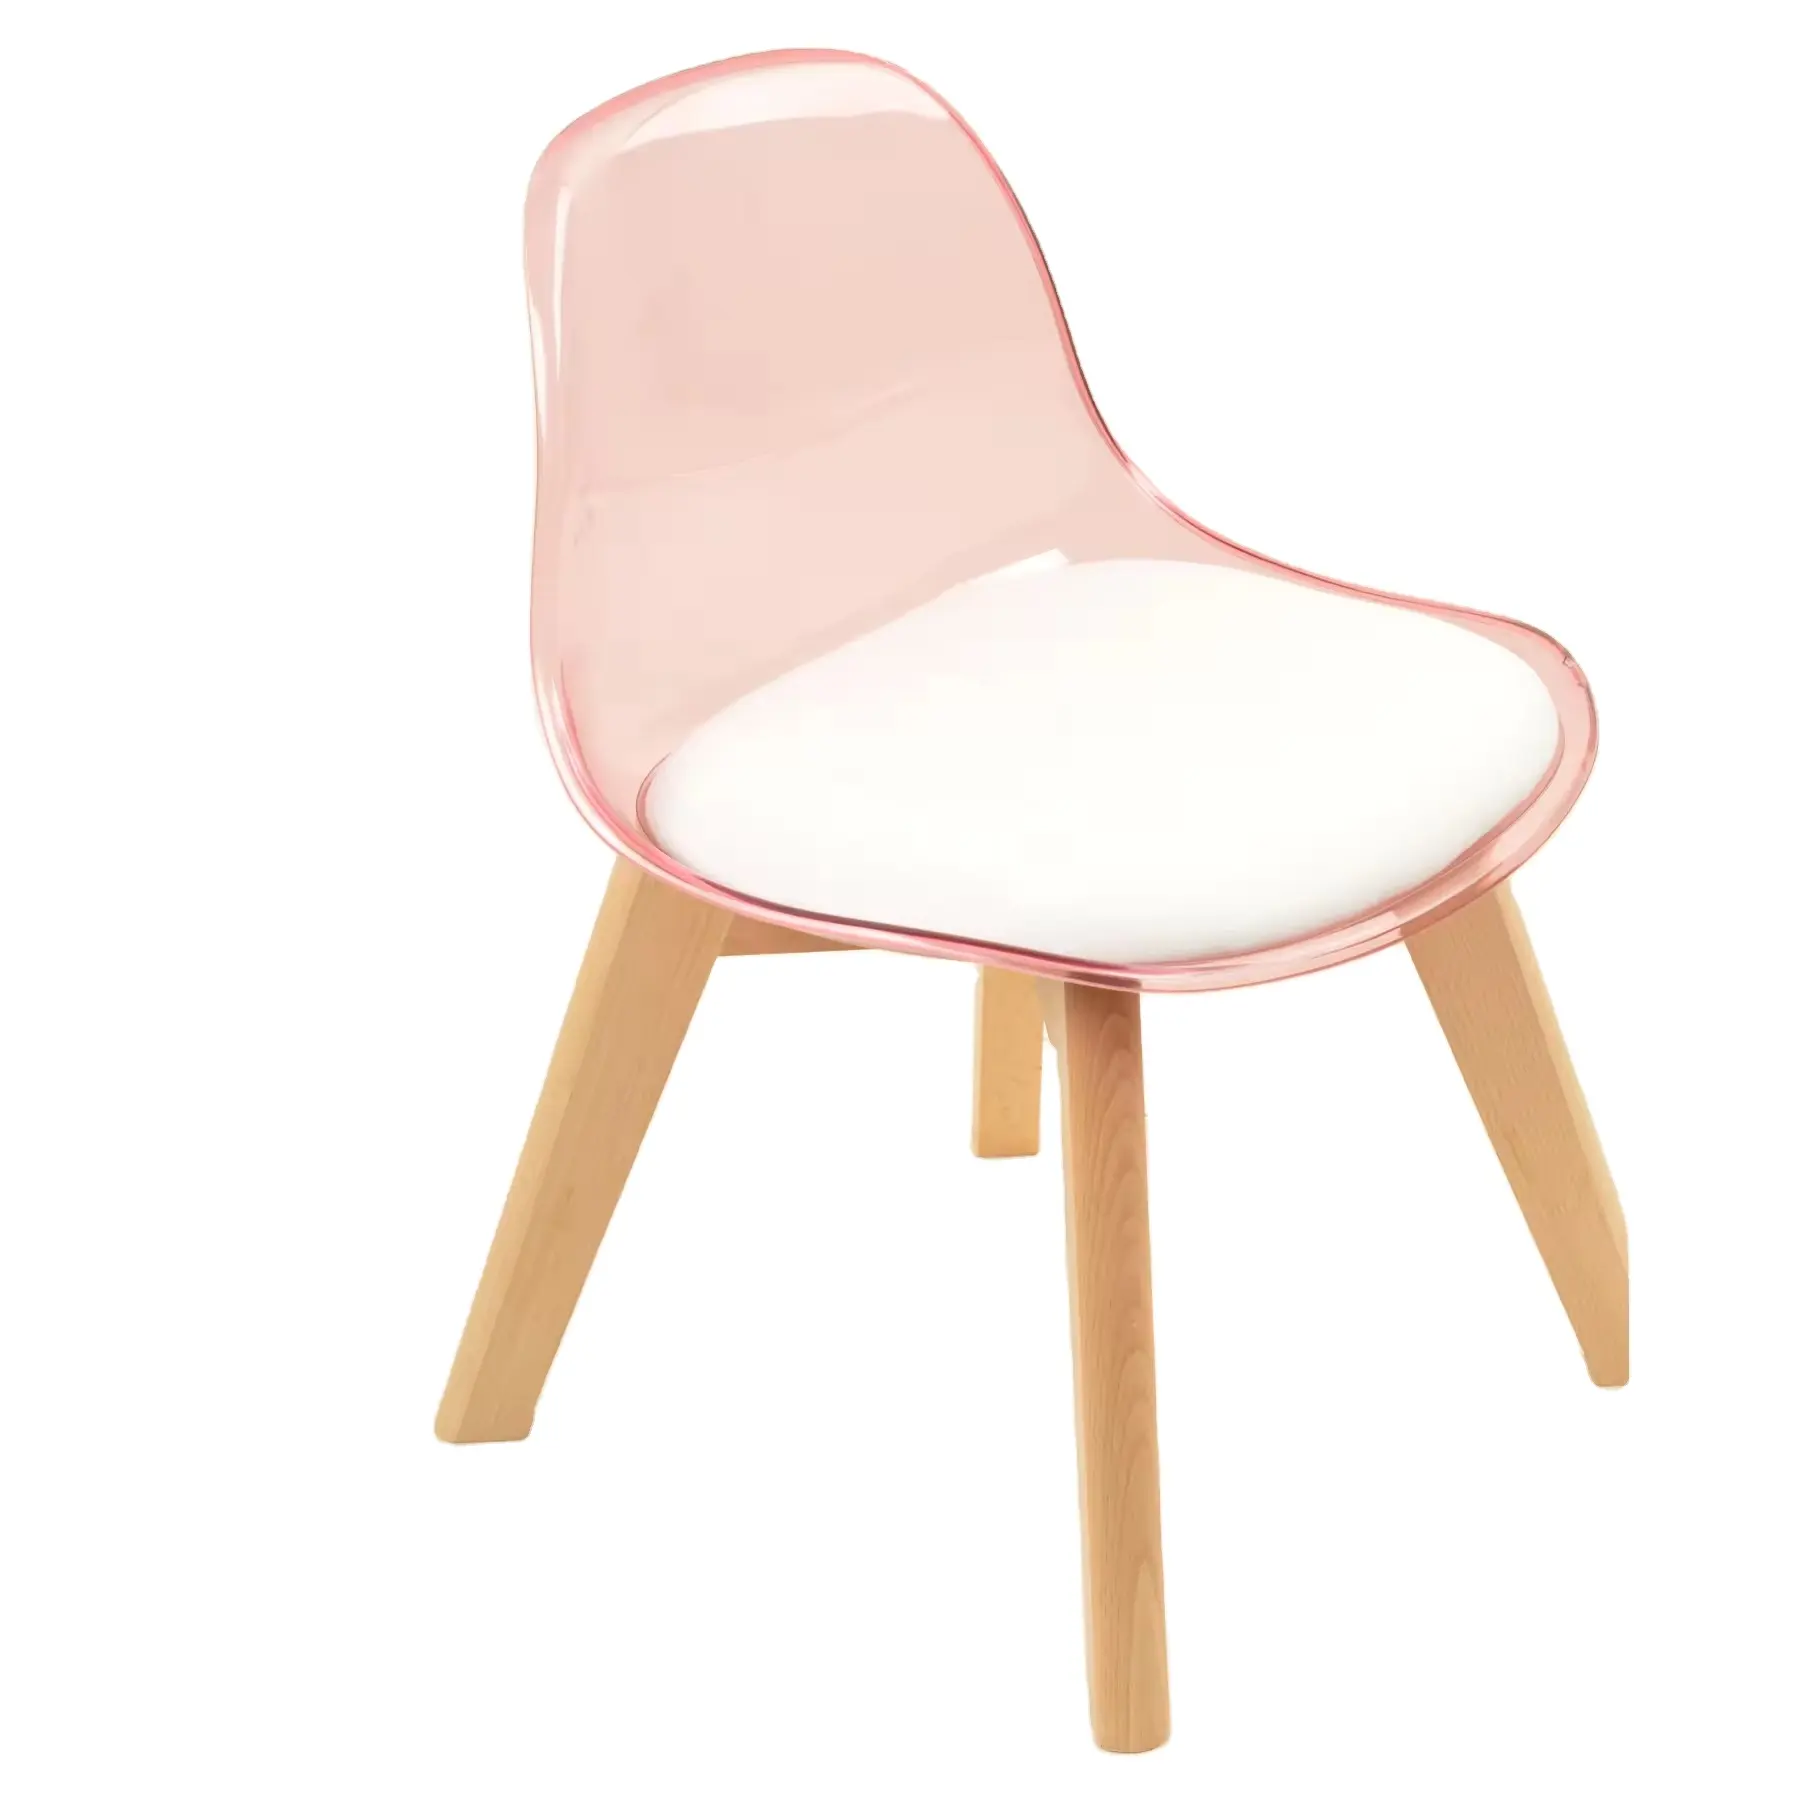 Ghế nhựa xếp chồng hiện đại màu hồng phòng ăn ghế cafe đồ nội thất nhựa trẻ em ghế ngoài trời